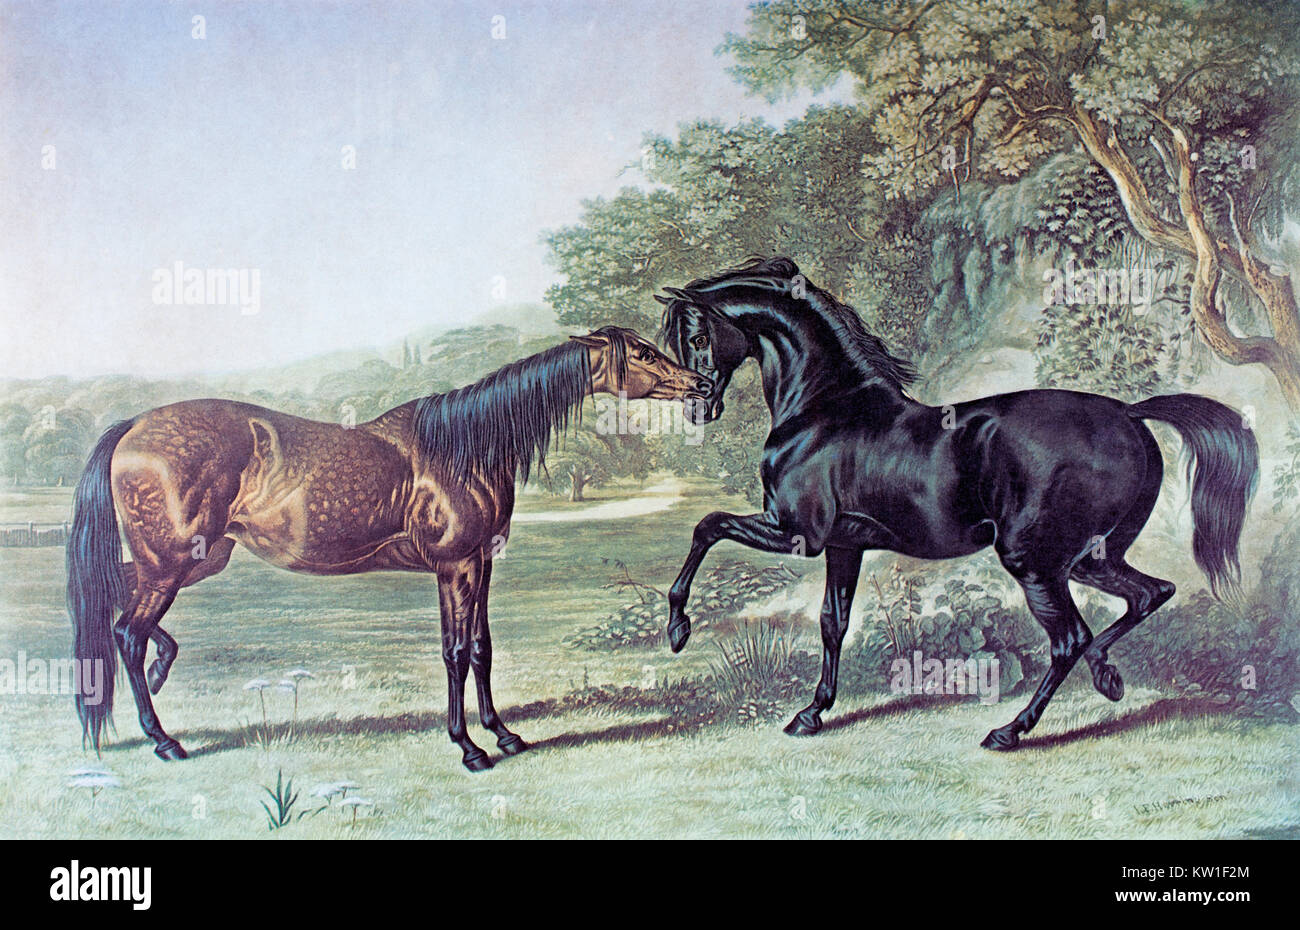 Zwei Pferde treffen. Aus der Mitte des 19. Jahrhunderts Gravur von Charles Hunt, 1803-1877, nach einem Gemälde von J.F. Hering Sr., 1795-1865. Die Gravur wurde durch die Herren Fores Sporting and Fine-Repository und Rahmen, Manufaktur, Piccadilly, London im späten 19. Jahrhundert veröffentlicht. Stockfoto